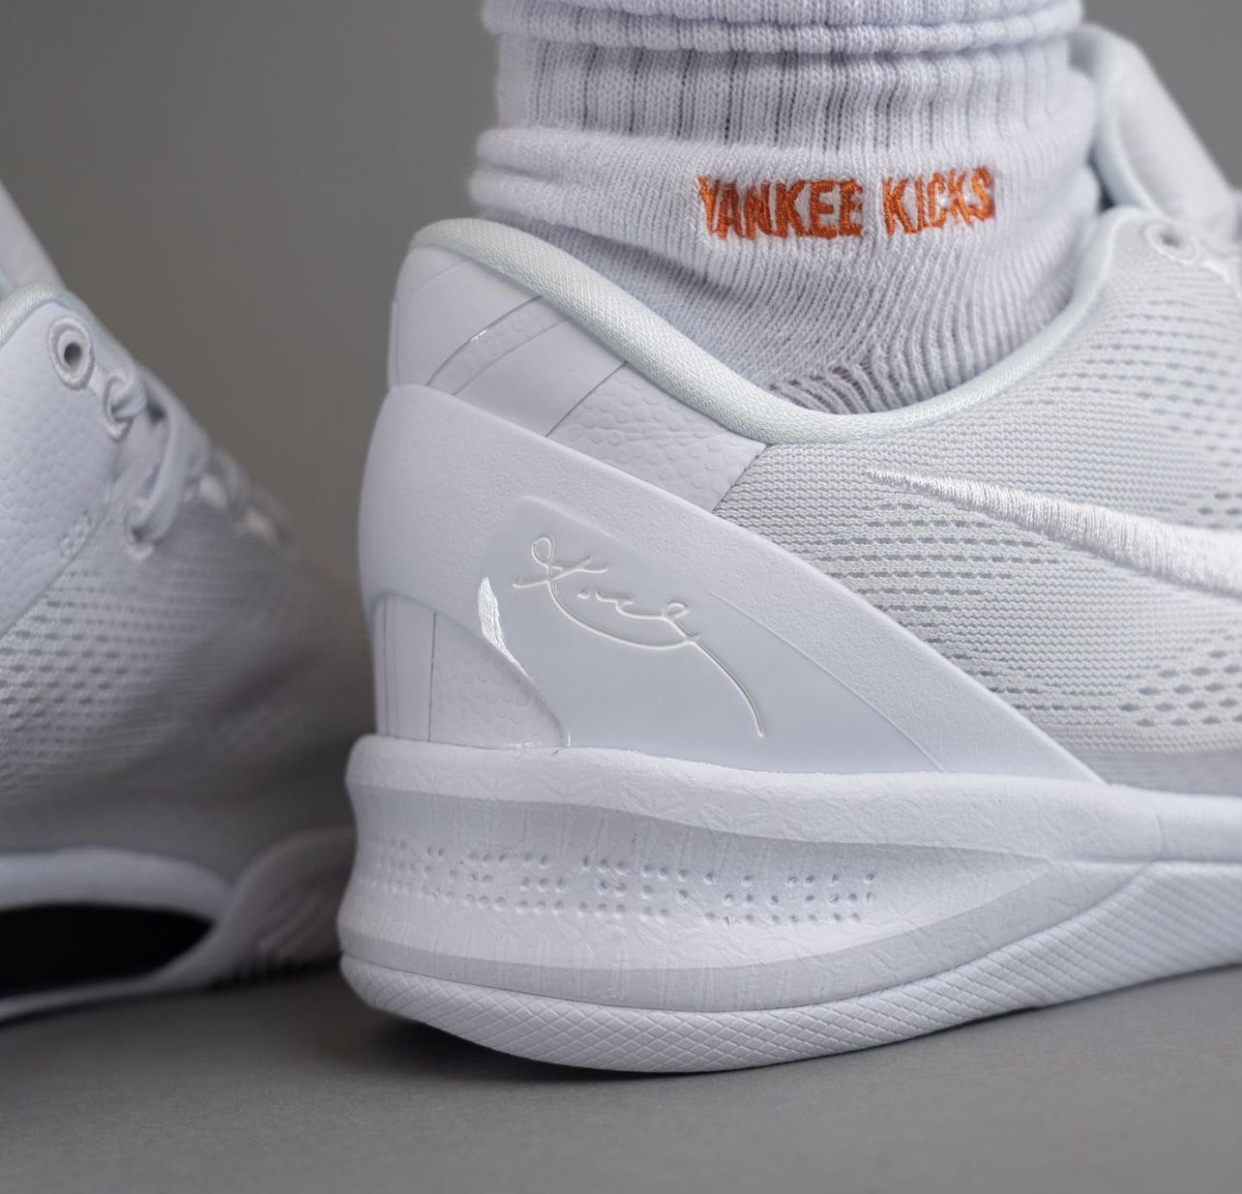 Nike Kobe 8 Protro Triple White On-Feet